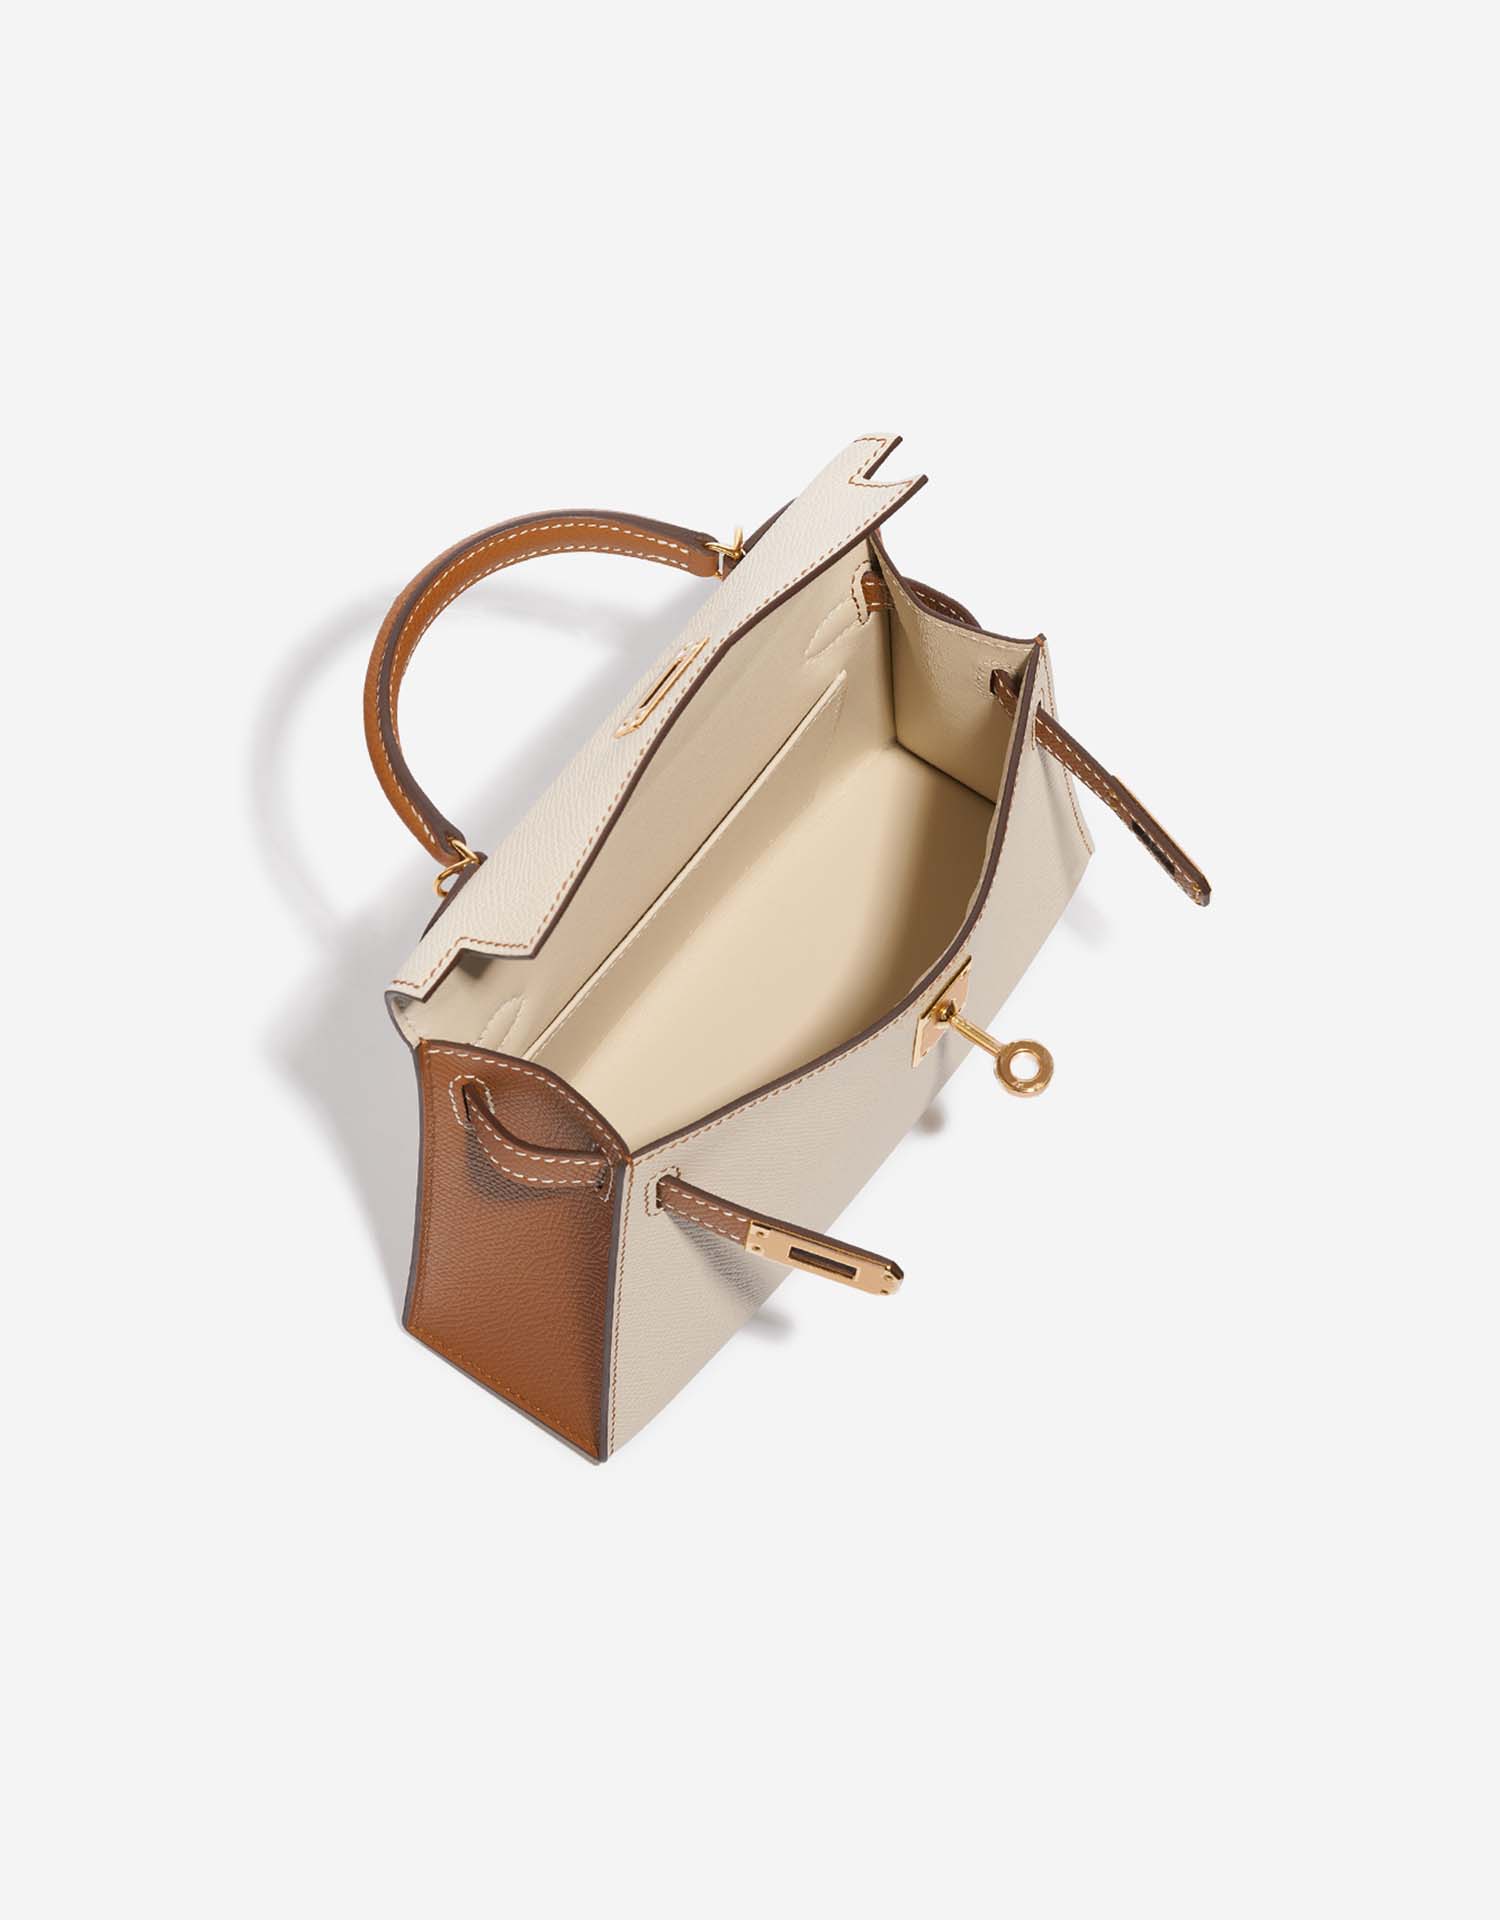 Hermès KellyHSS Mini Craie-Gold Innenseite | Verkaufen Sie Ihre Designer-Tasche auf Saclab.com